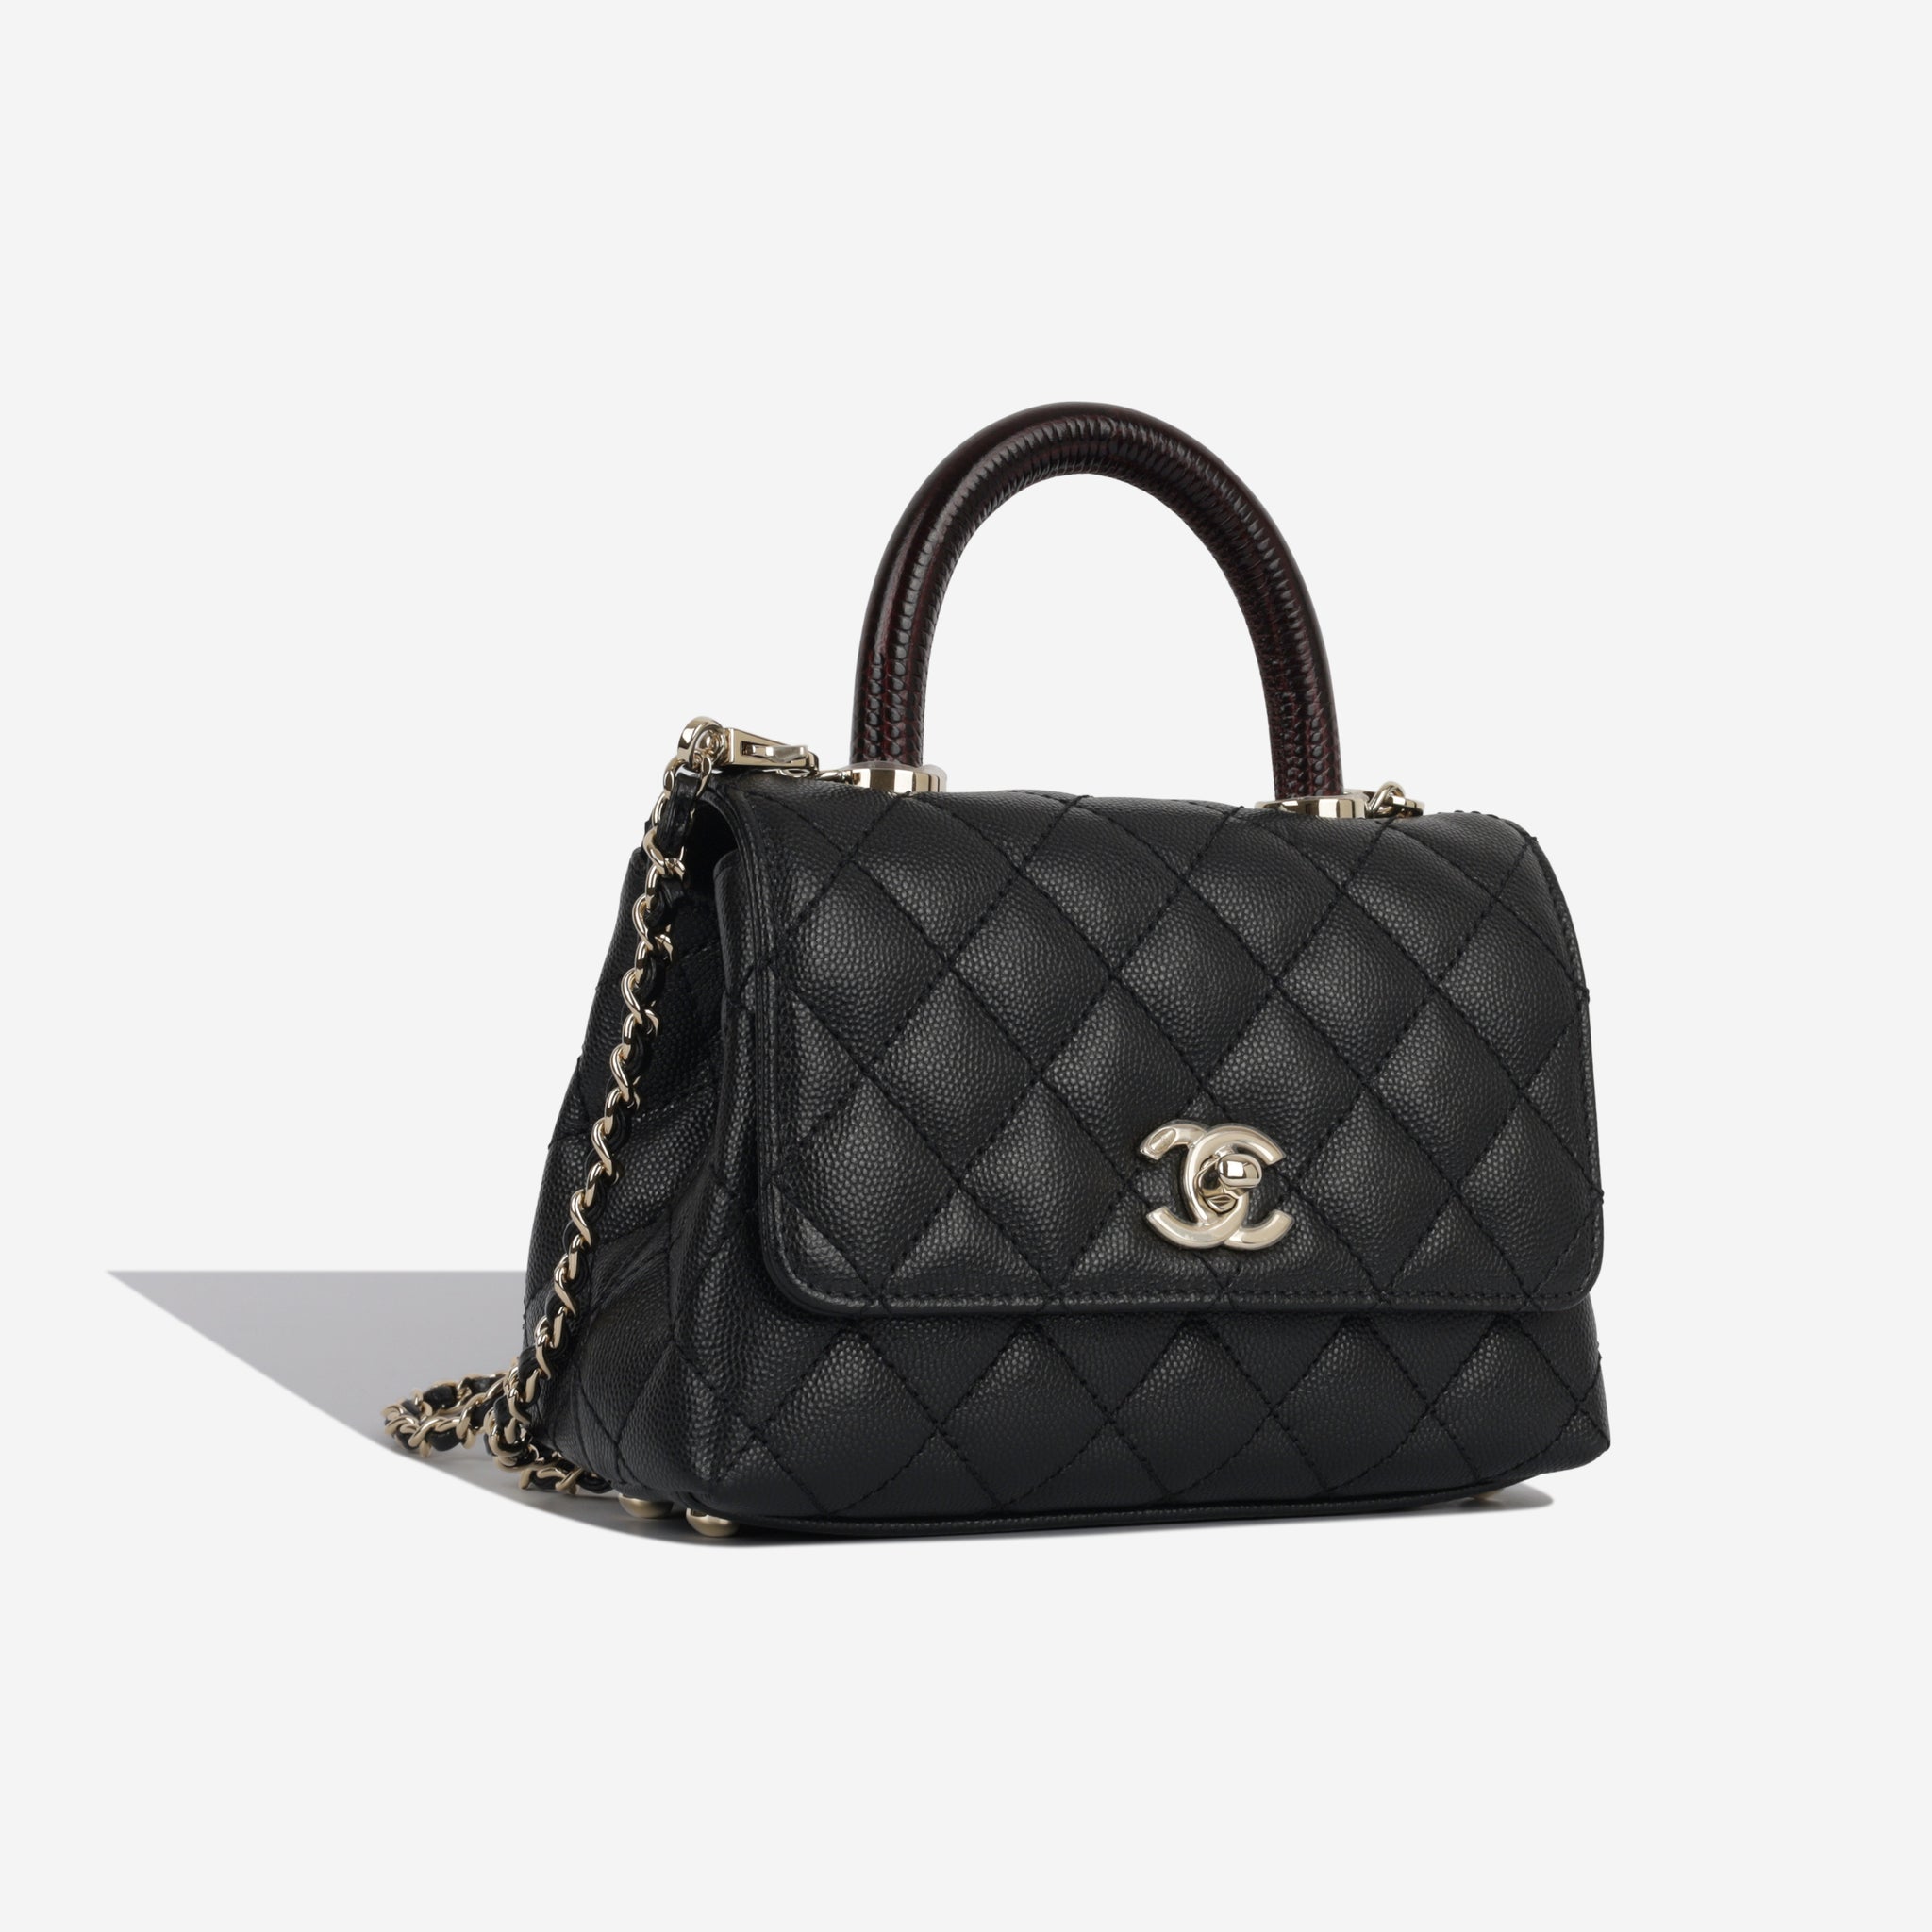 Chanel - Coco Handle - Mini - Black Caviar / Lizard - Brand New | Bagista